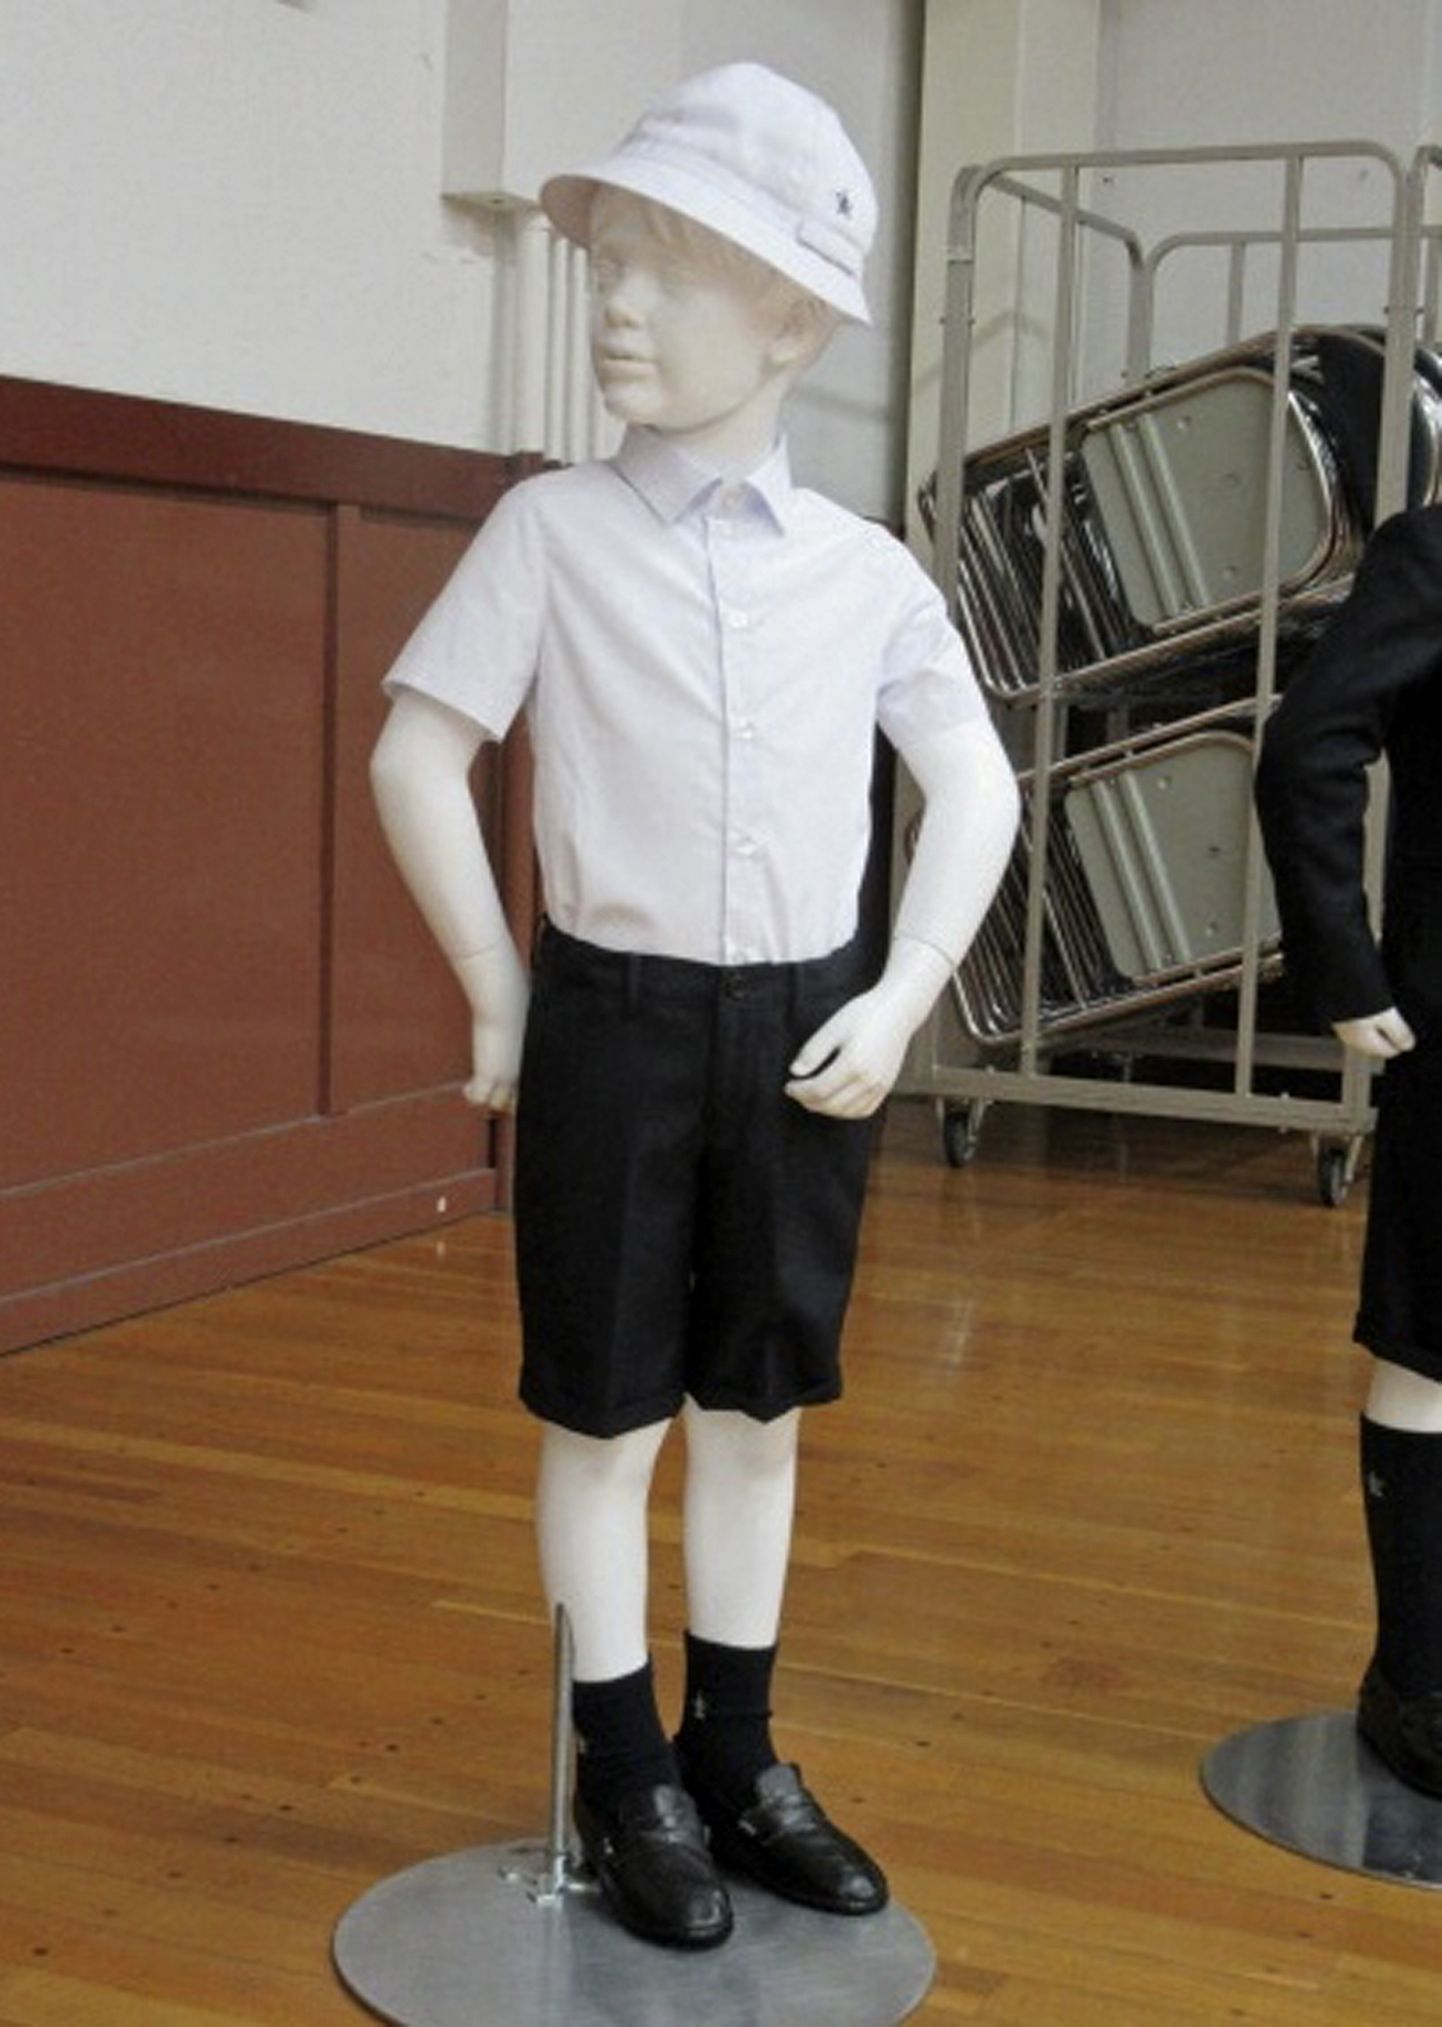 Armani koolivorm, mis sooviti Jaapani põhikoolis kasutusele võtta.